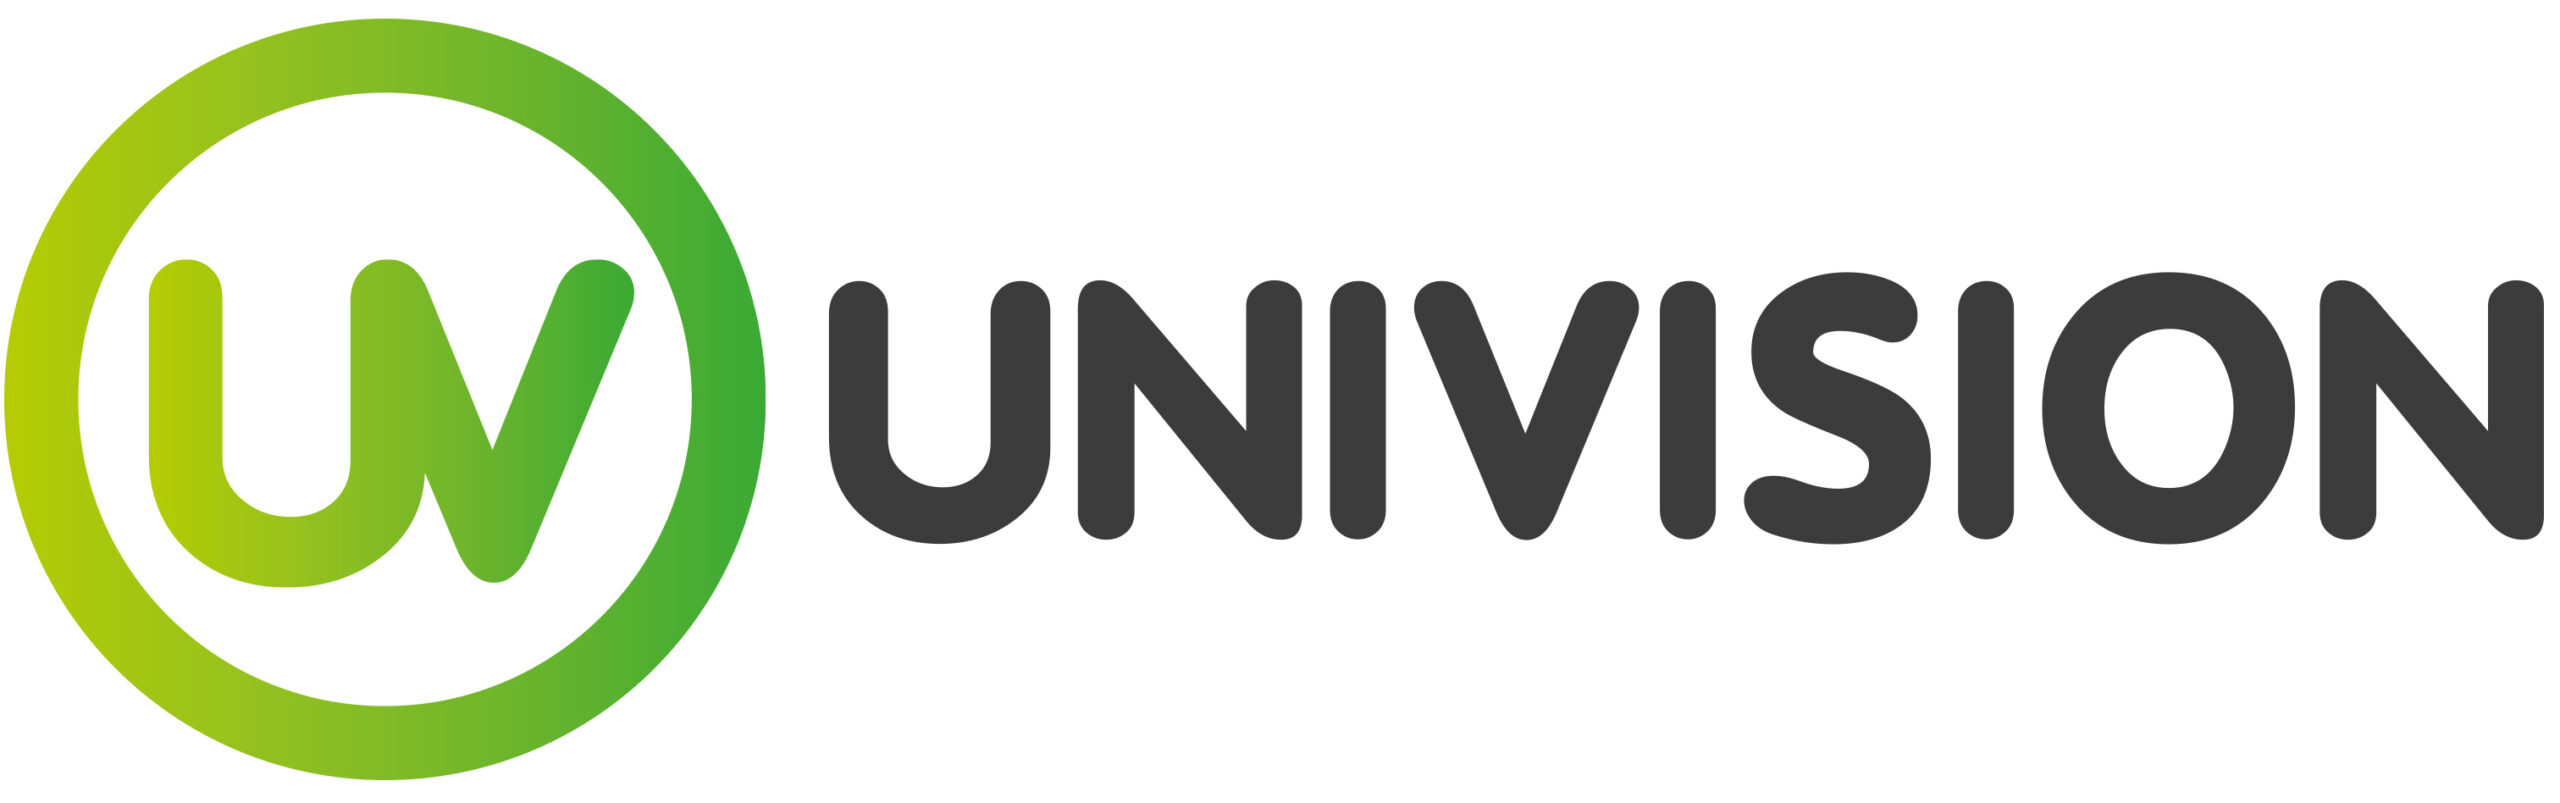 Univision Business Logo - Xtra Marketing Partner